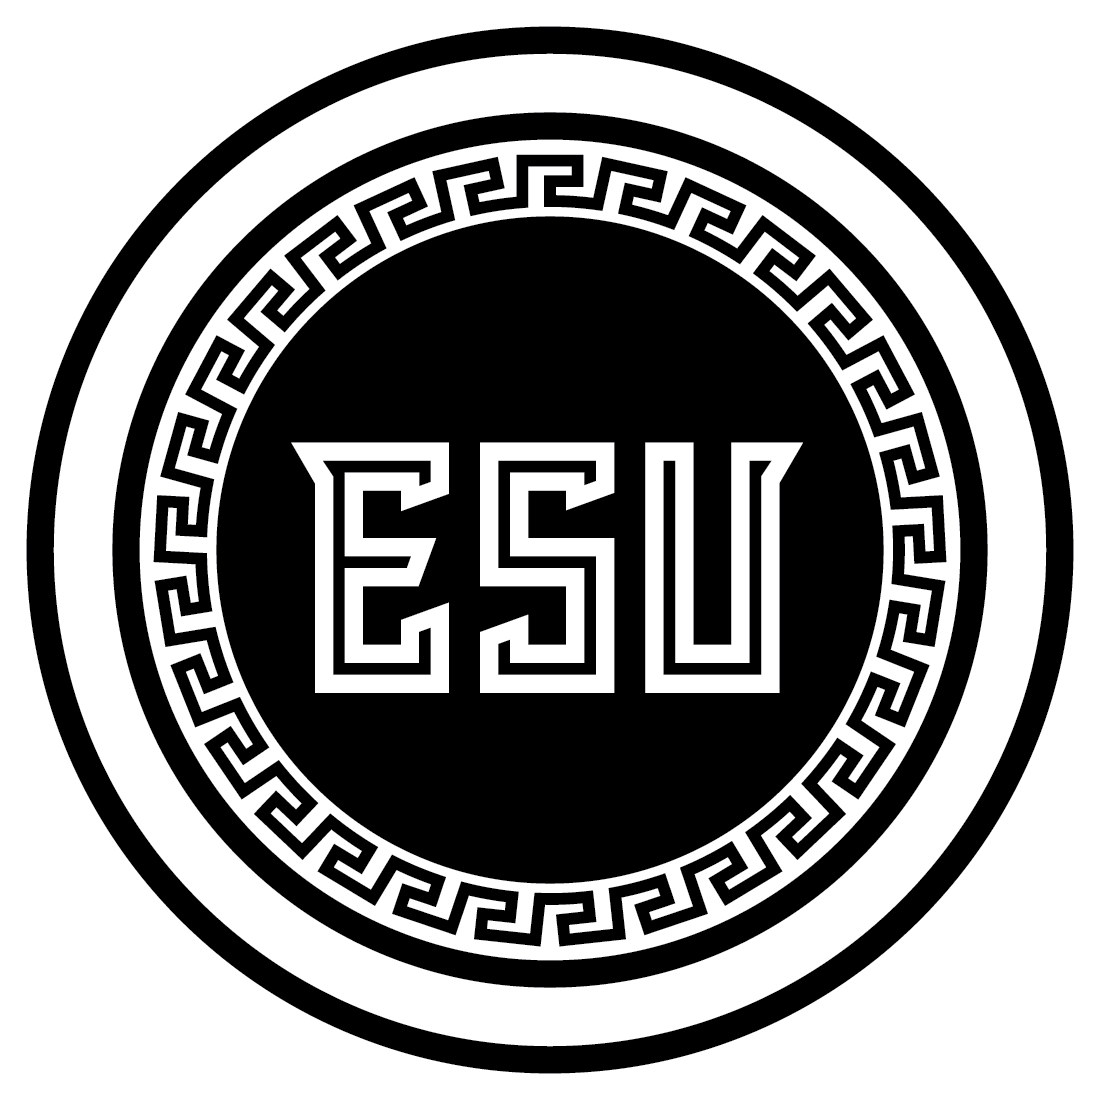 ESU Alumni Coloring Page (Cover)